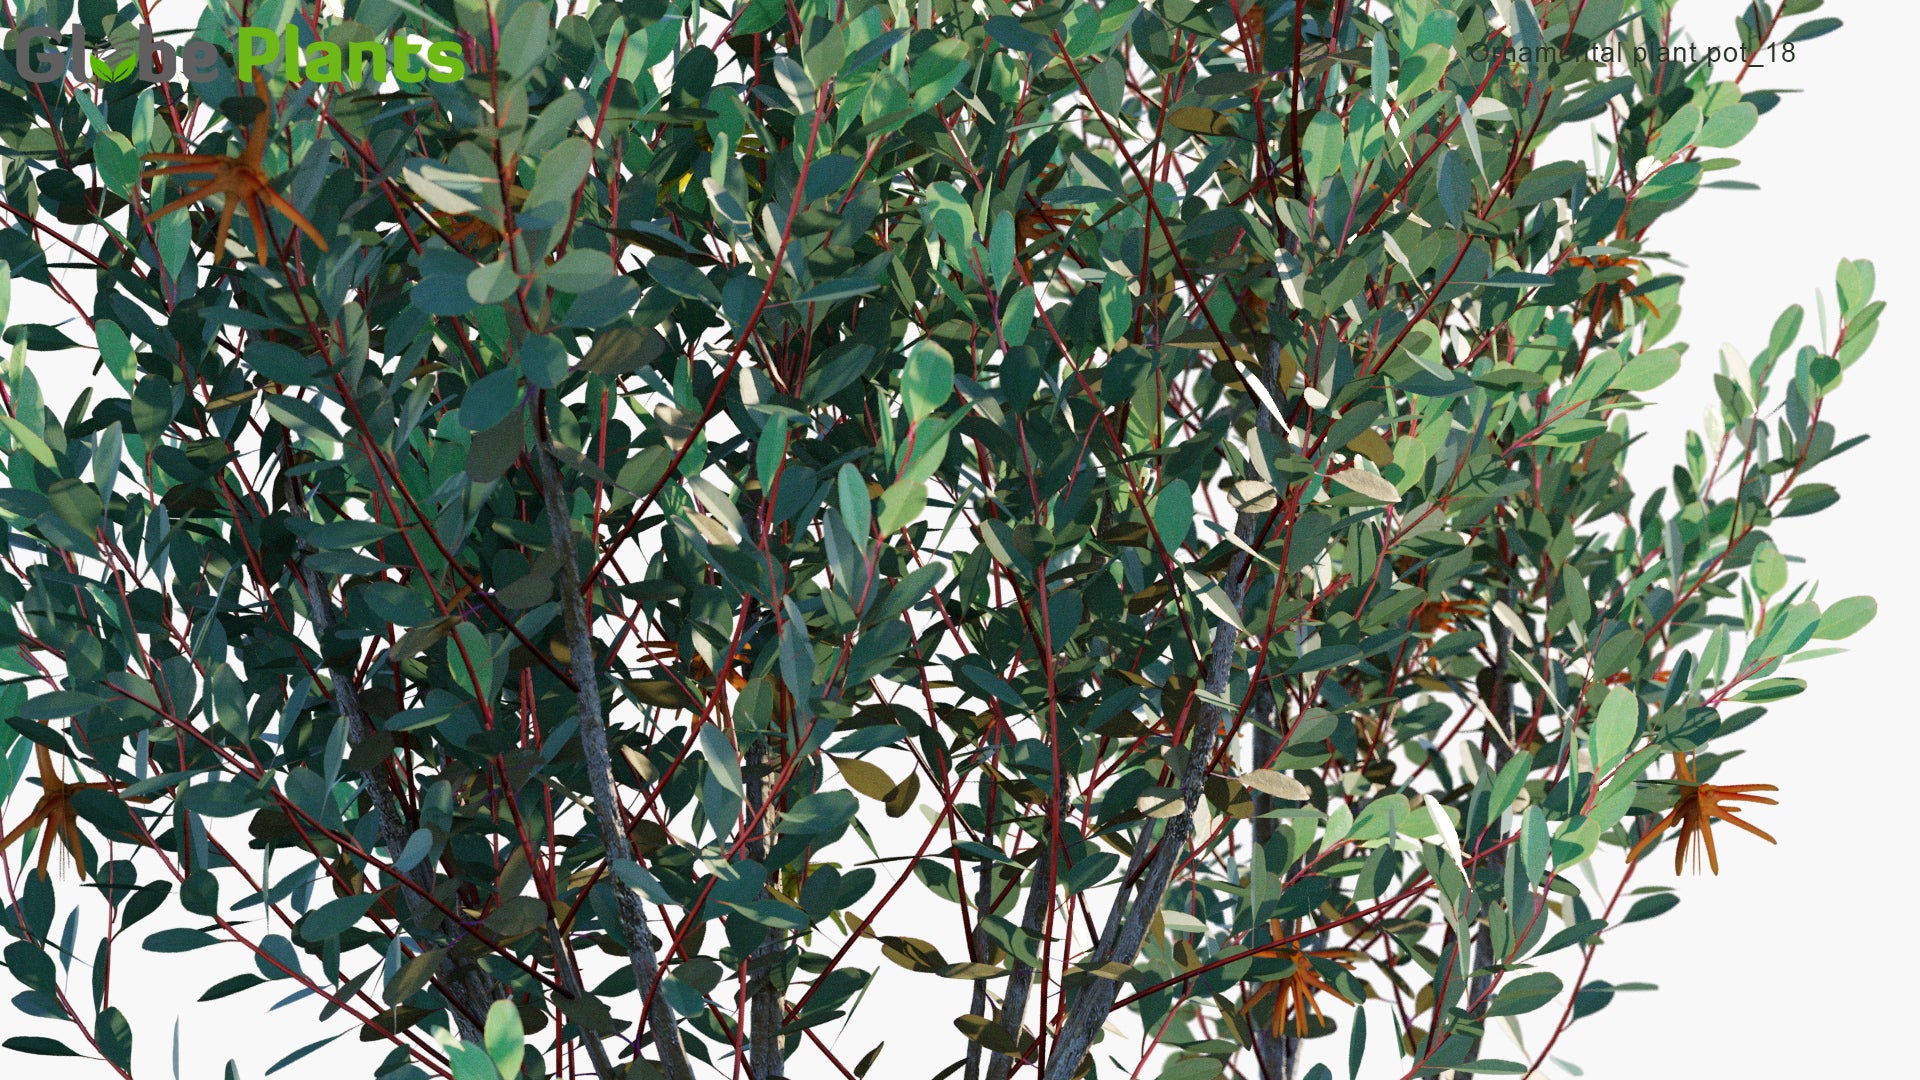 Ornamental Pot Plant 18 - Eucalyptus Lehmannii (3D Model)